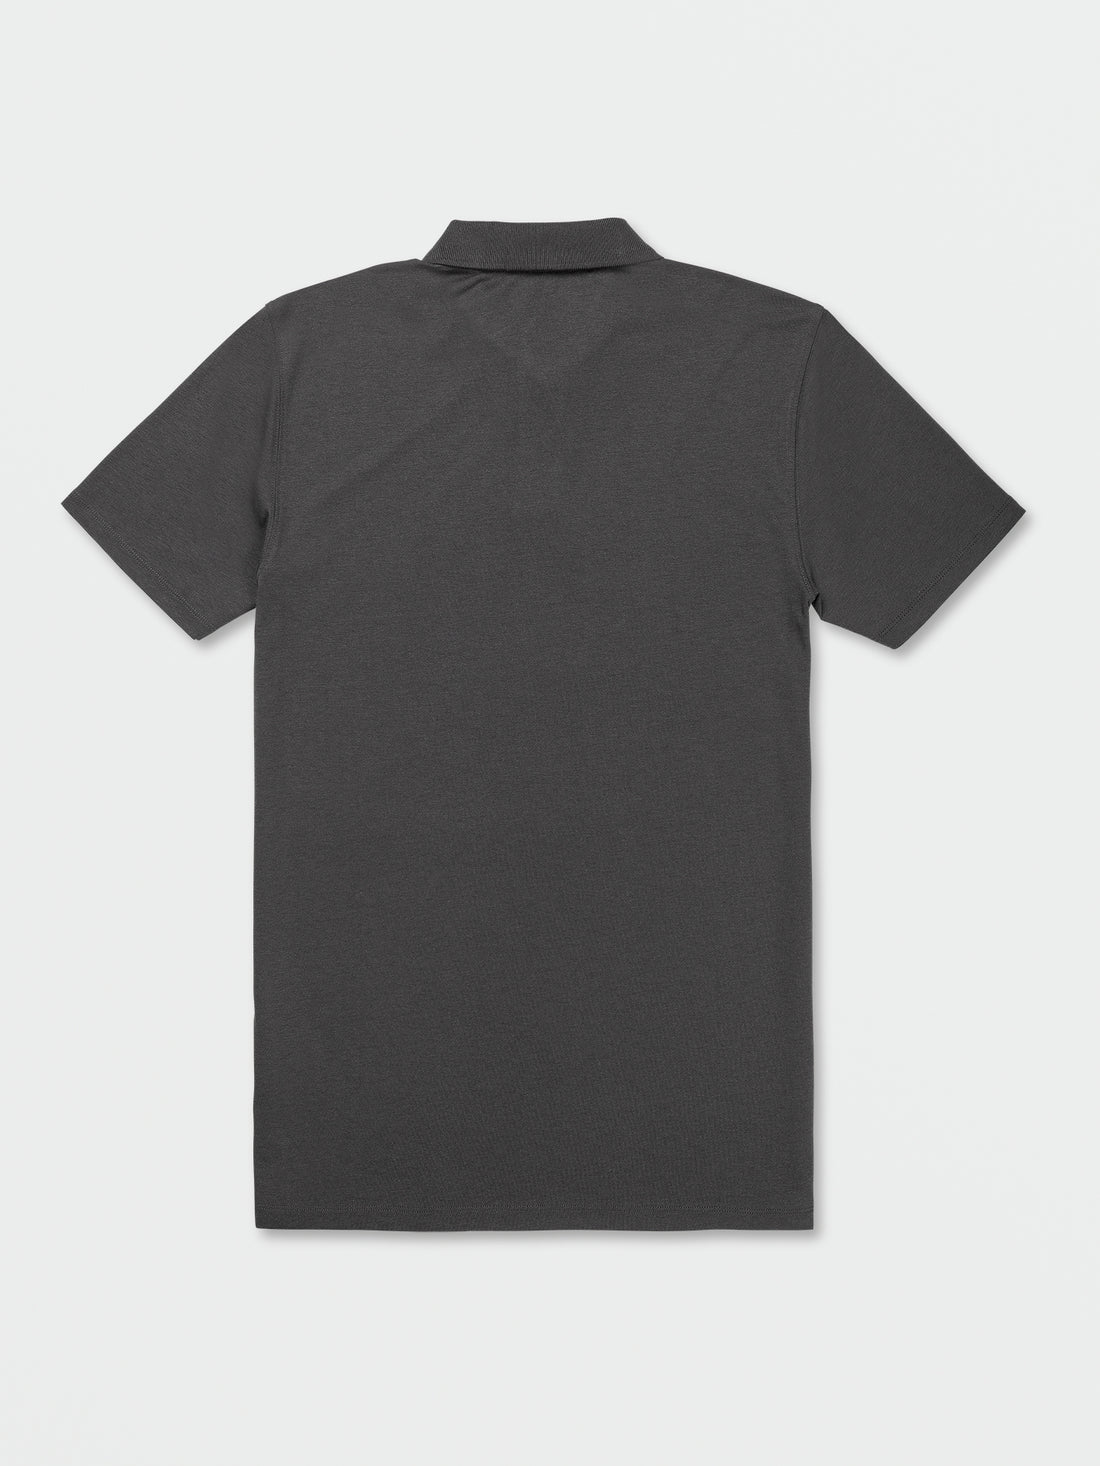 Middler Polo Short Sleeve Shirt - Asphalt Black